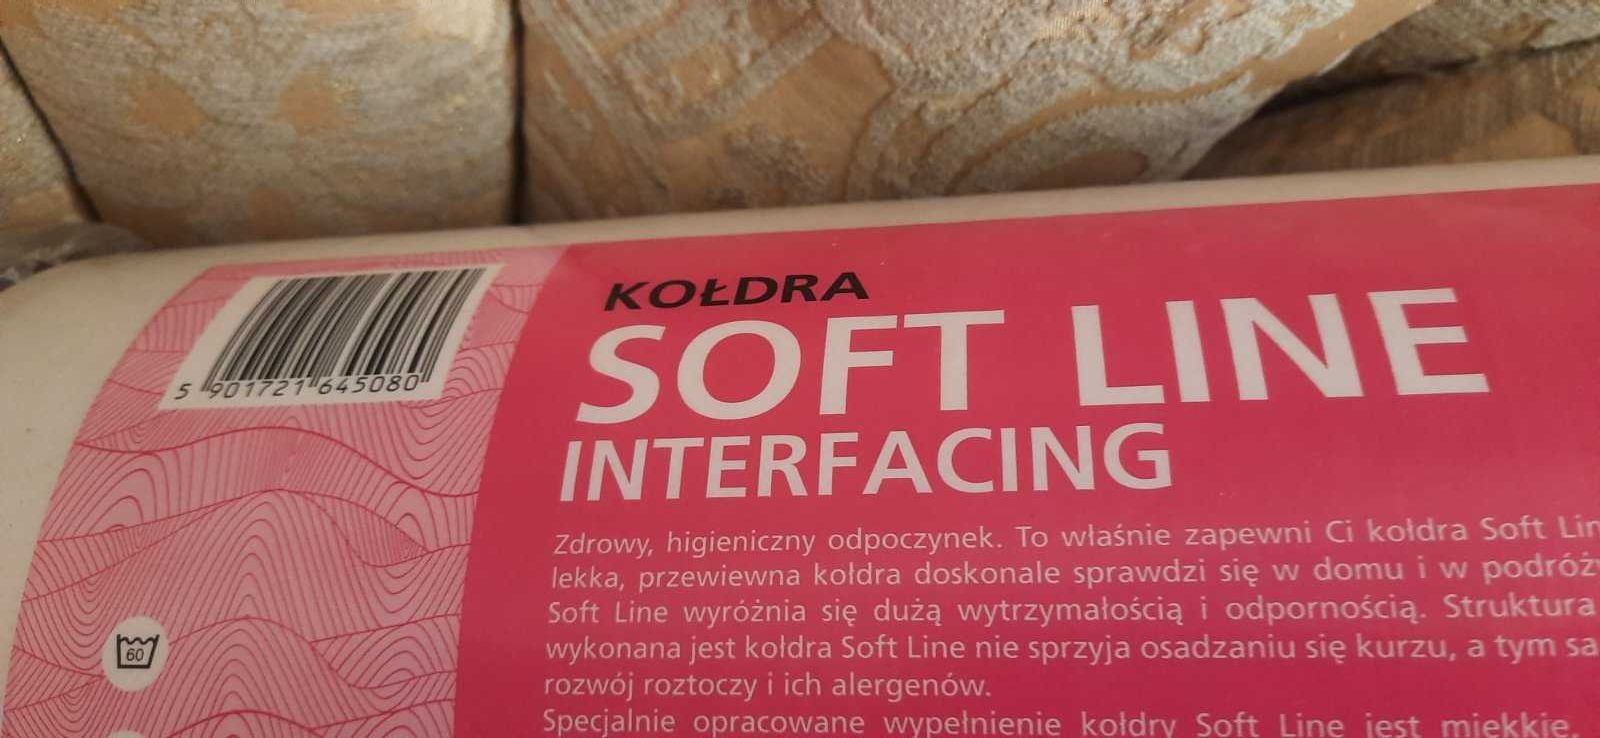 одеяло SOFT LINE 1550 X 2000 Польша теплое легкое распродажа